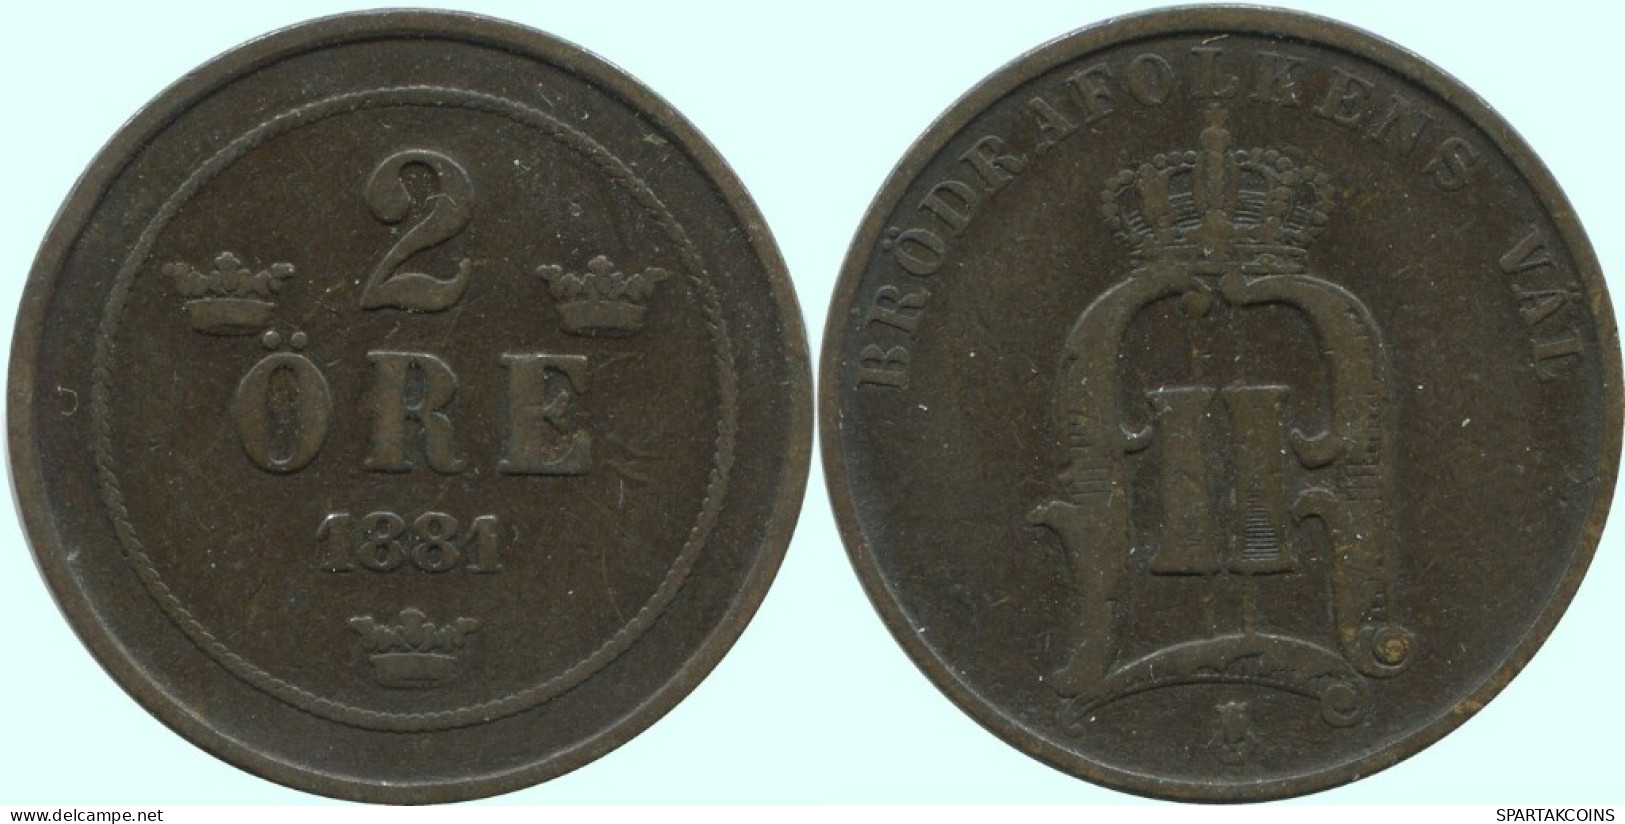 2 ORE 1881 SWEDEN Coin #AC924.2.U.A - Suède